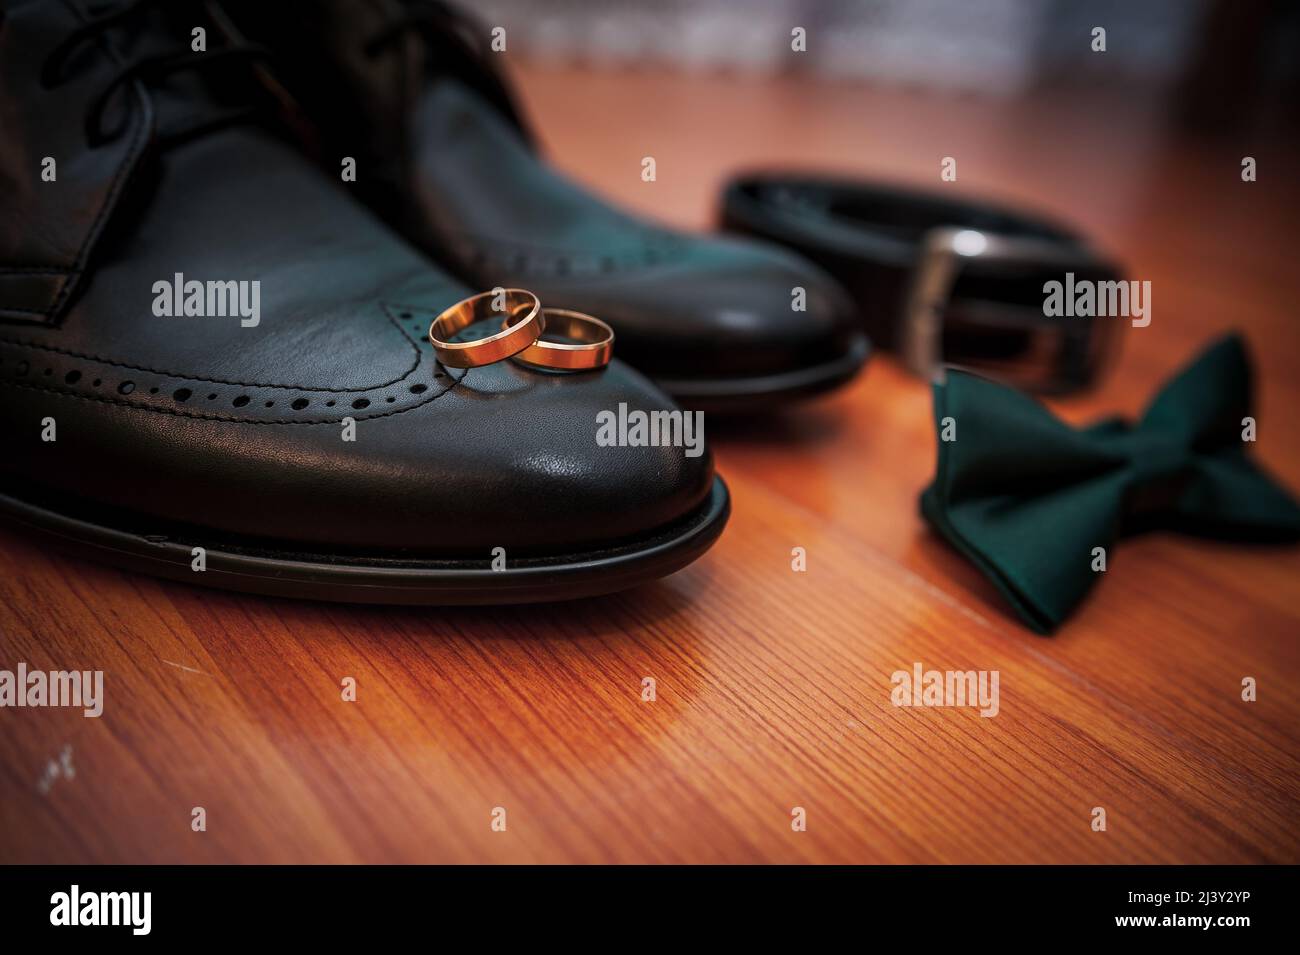 Chaussures noires en cuir, une ceinture, une paire d'anneaux dorés, une cravate papillon verte sur un fond Banque D'Images